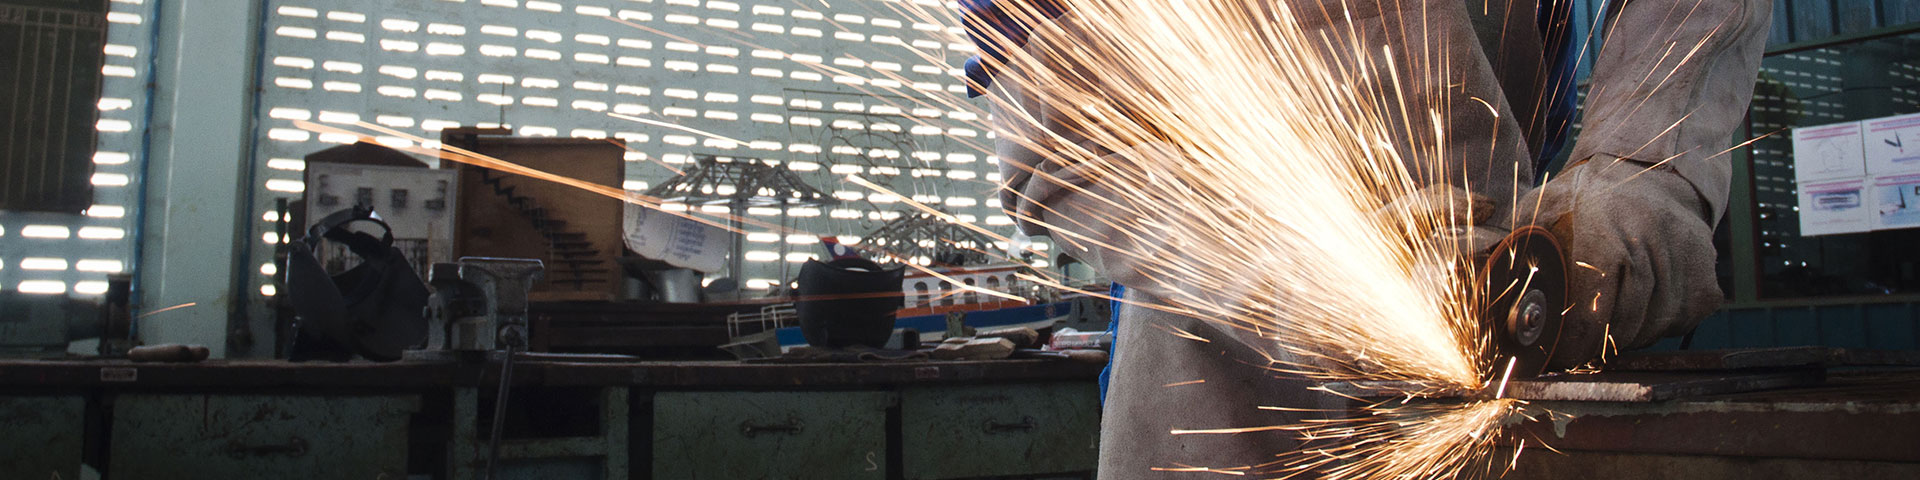 Ein Mensch mit Handschuhen bearbeitet Metall in einer Werkstatt.